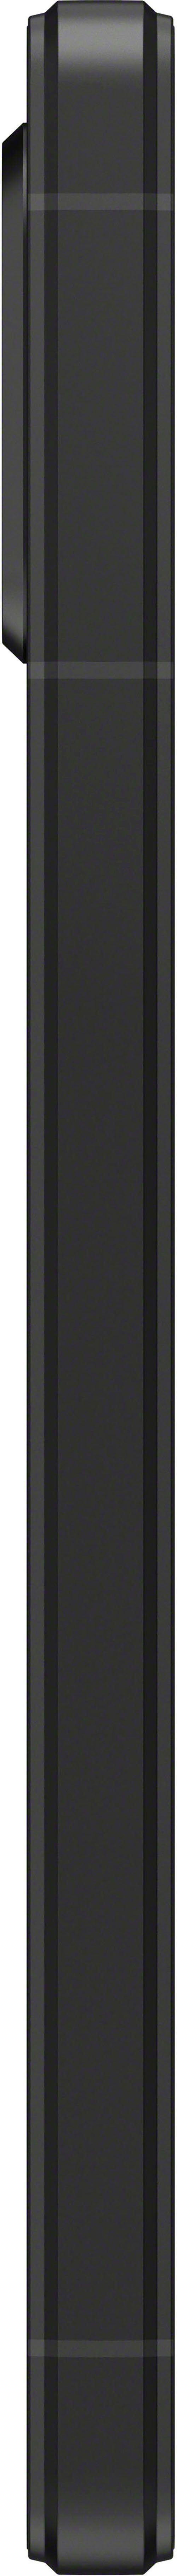 Sony XPERIA 5V Smartphone (15,49 128 Speicherplatz, MP Kamera) Zoll, schwarz cm/6,1 GB 12